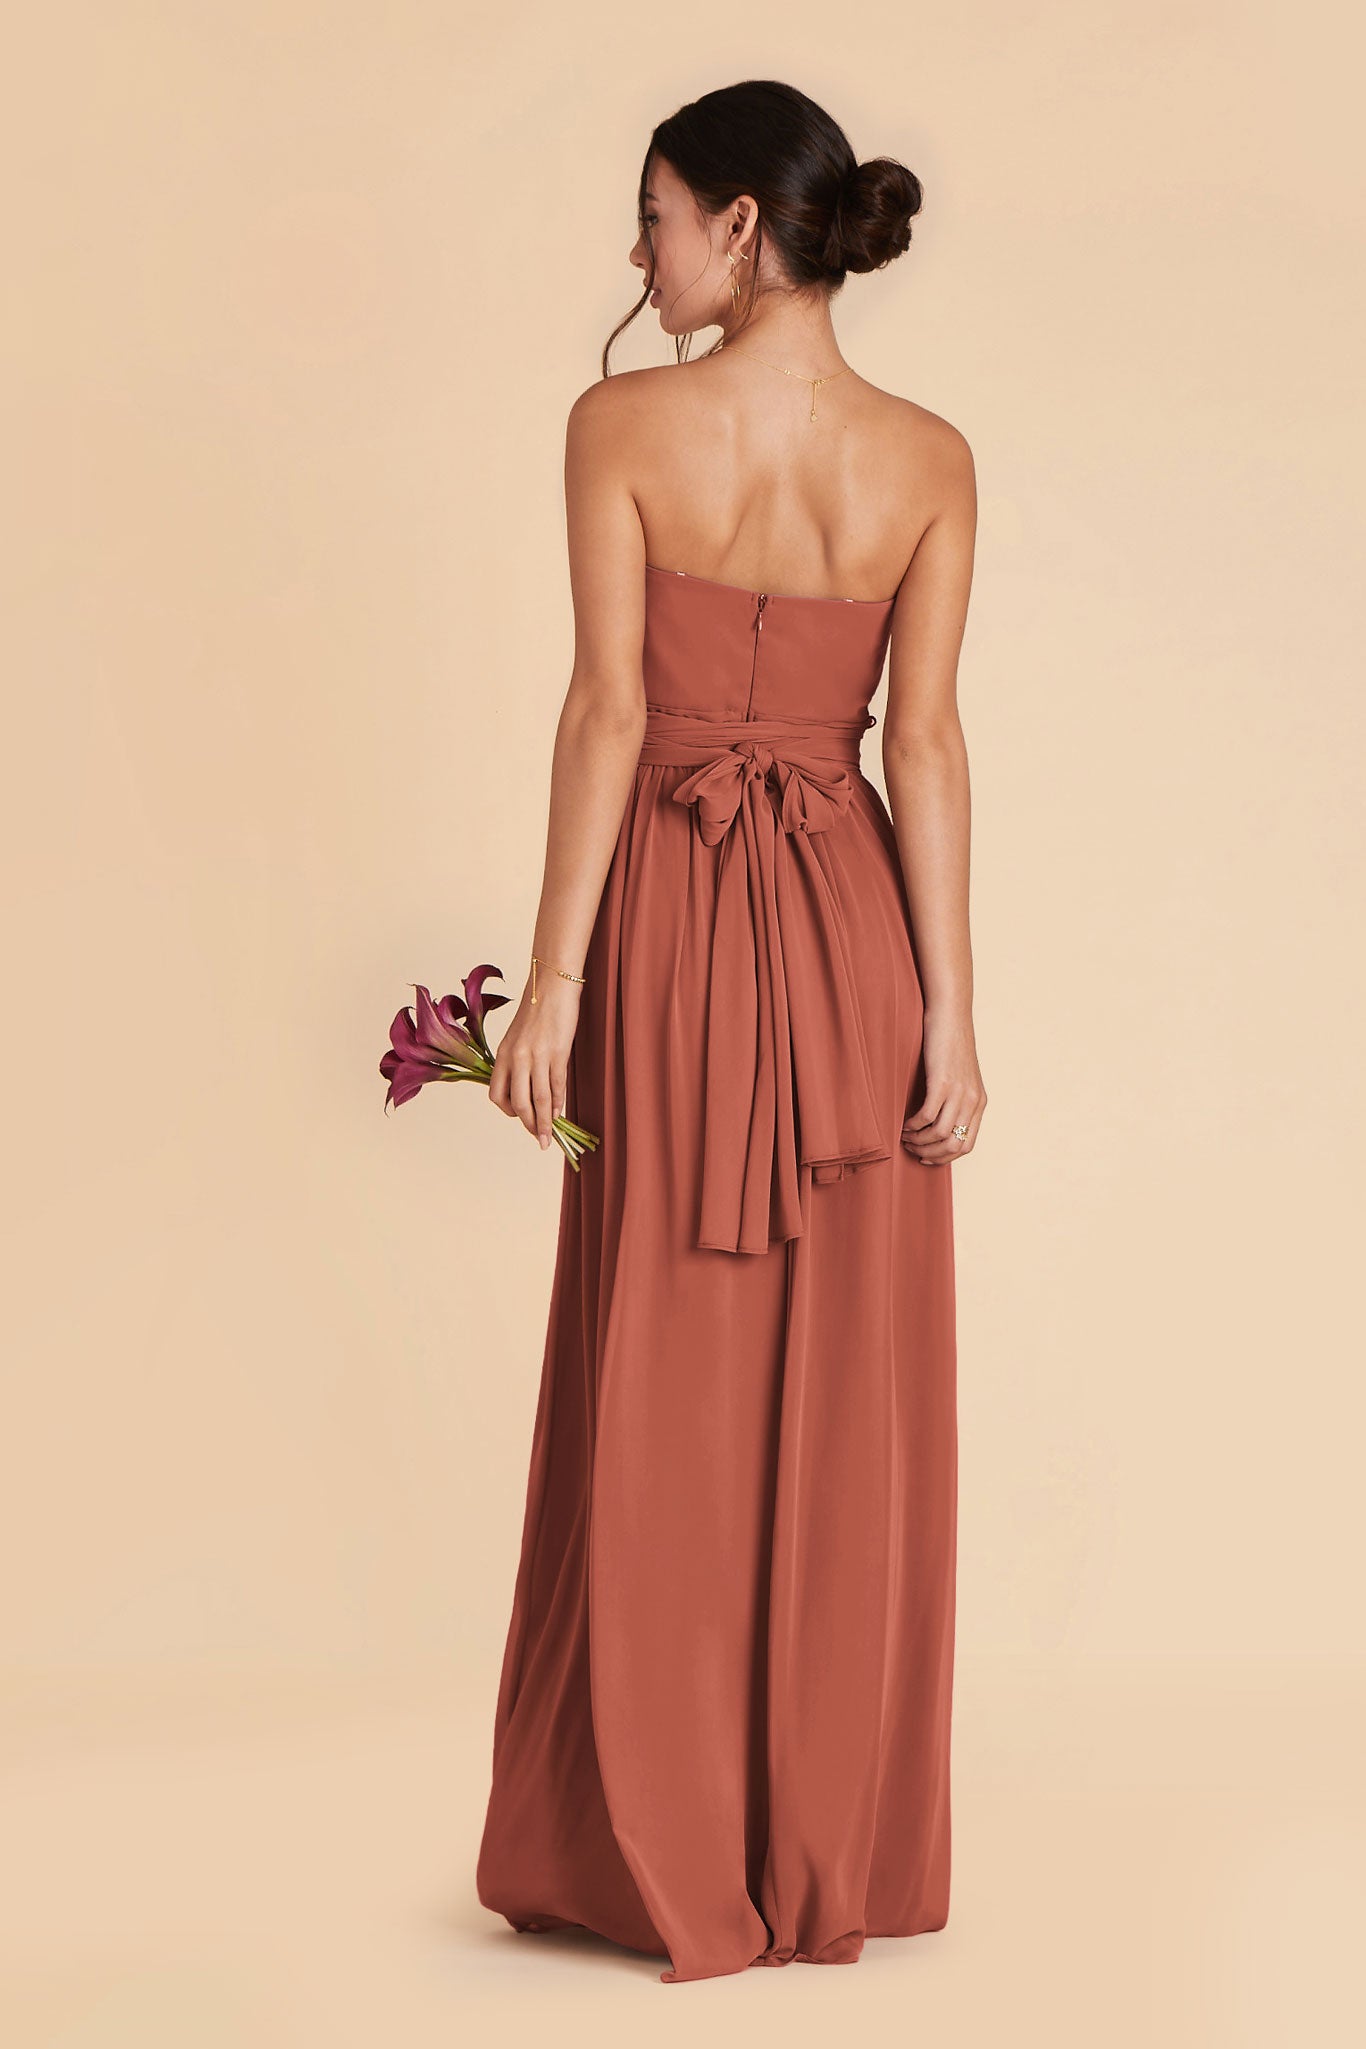 Desert Rose Grace Convertible Dress by Birdy Grey